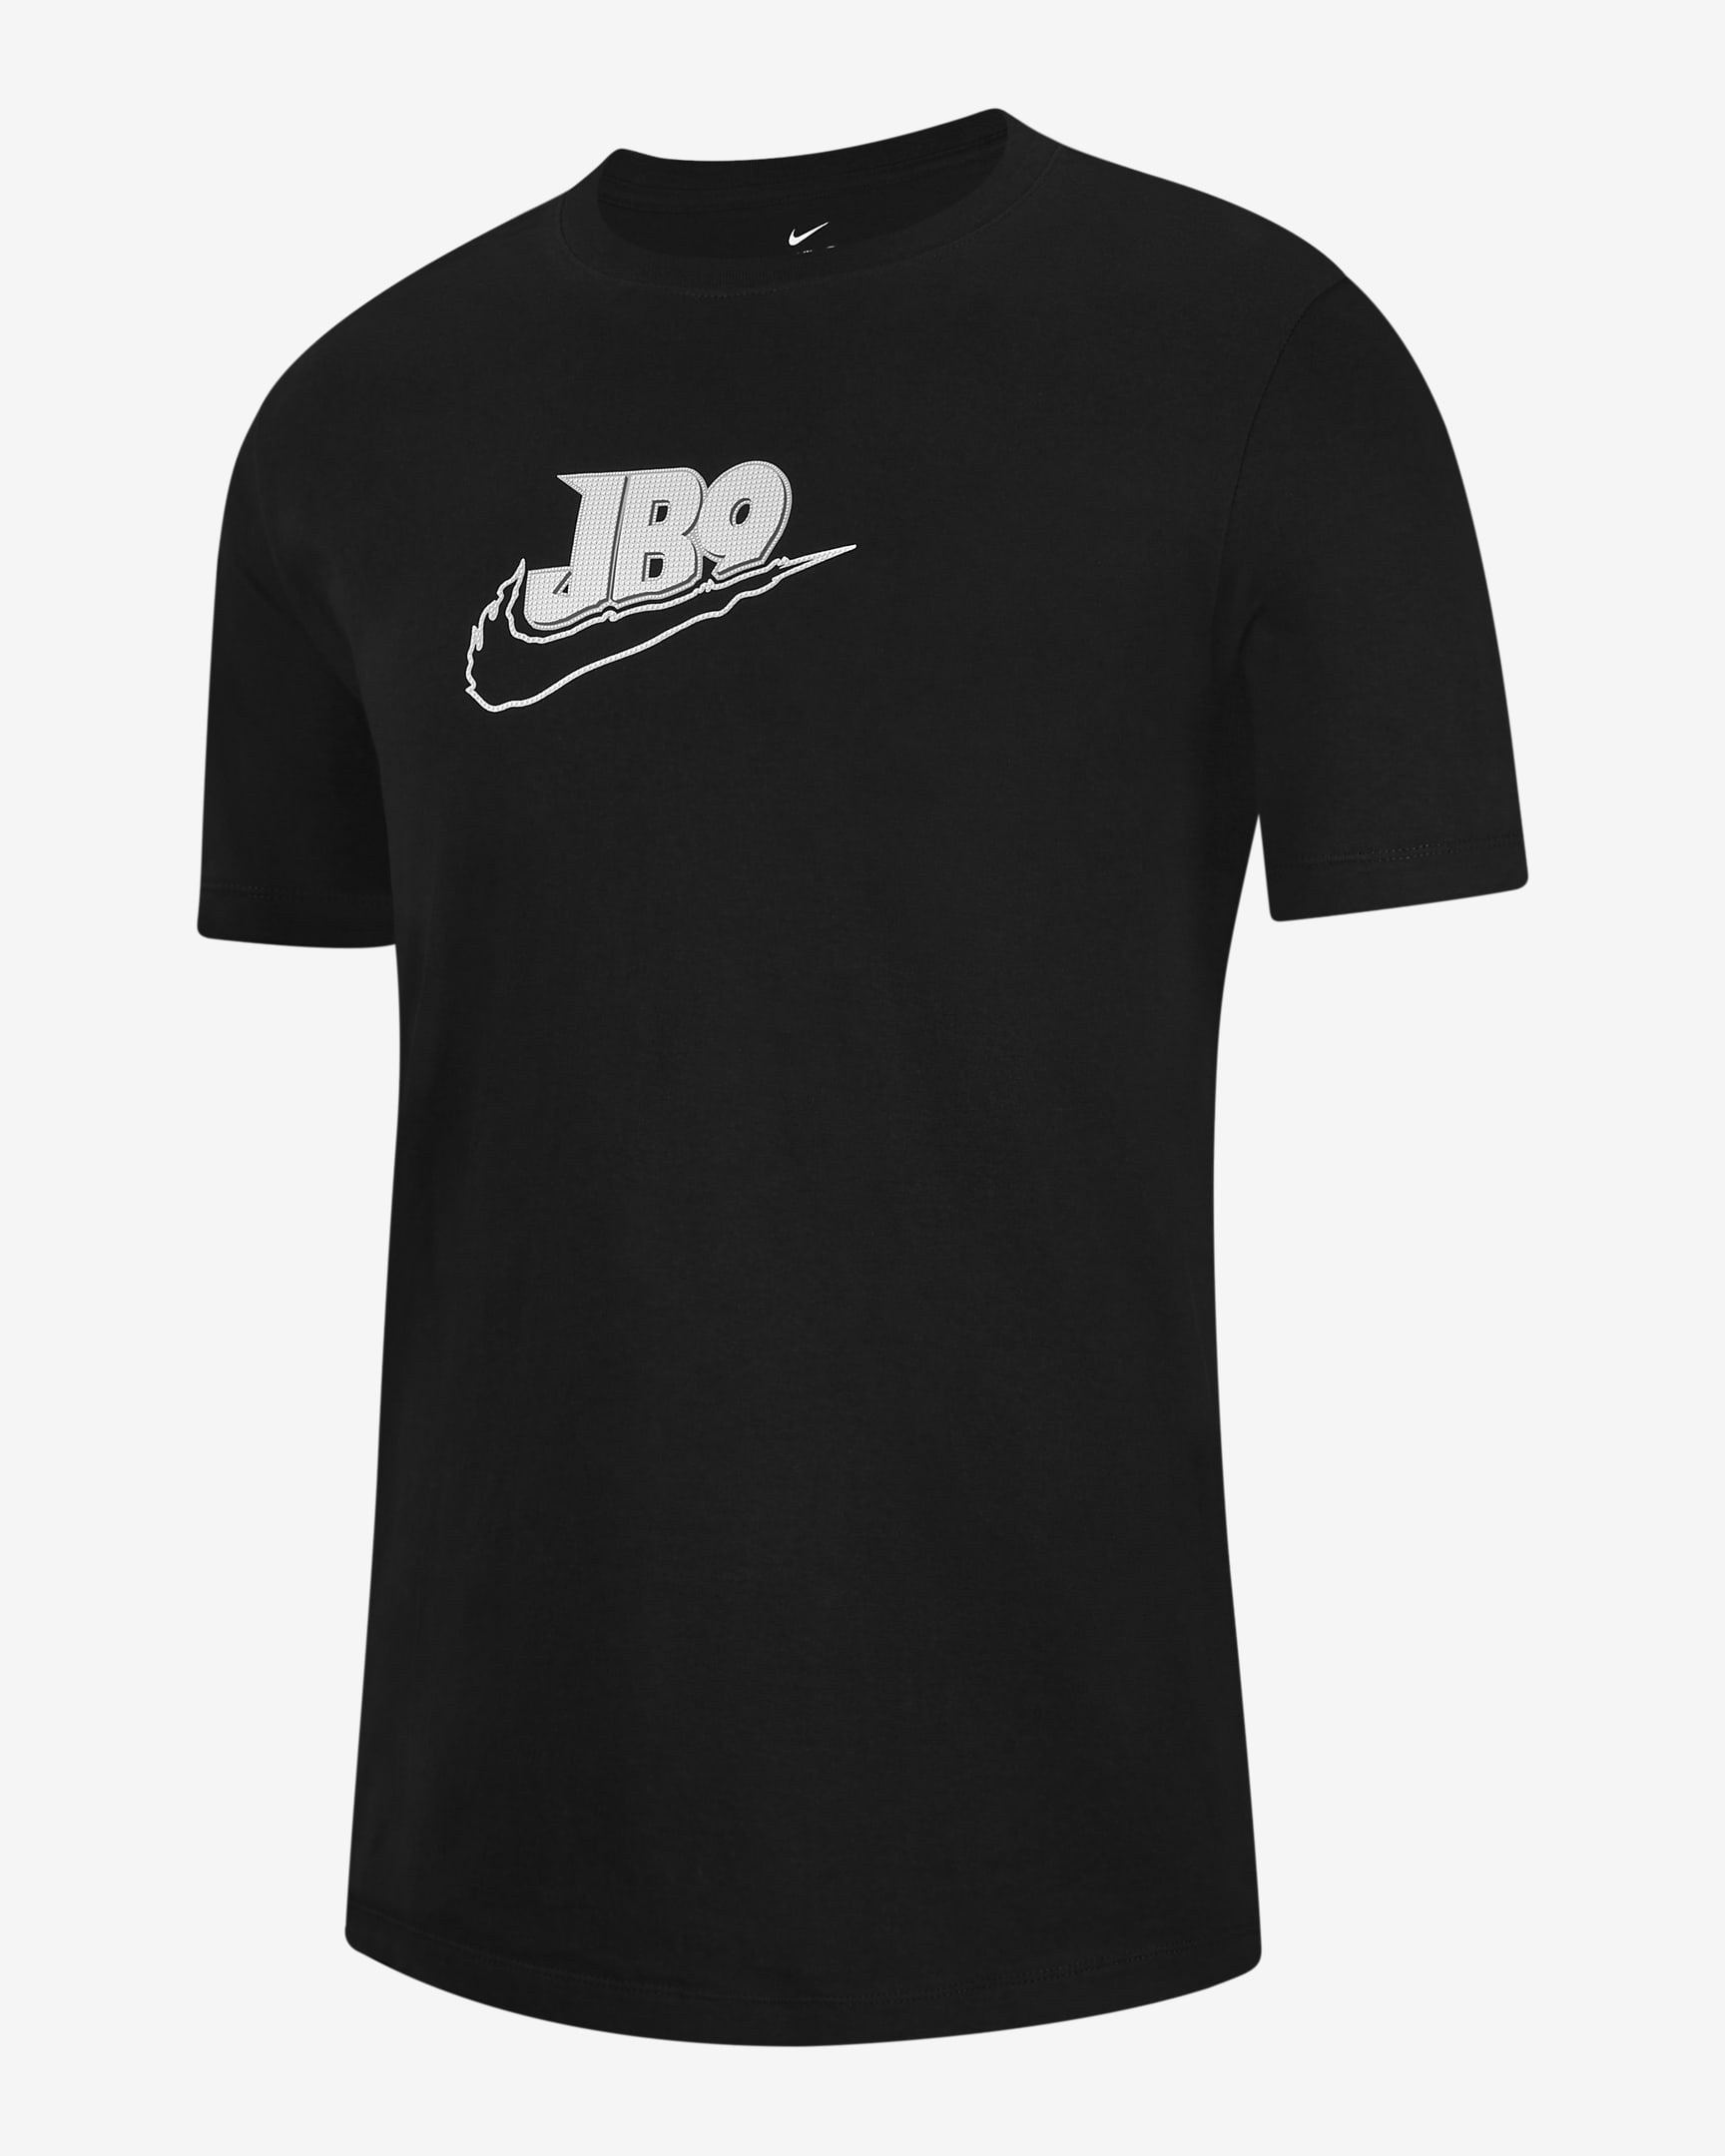 Joe Burrow Men\'s T-Shirt Black